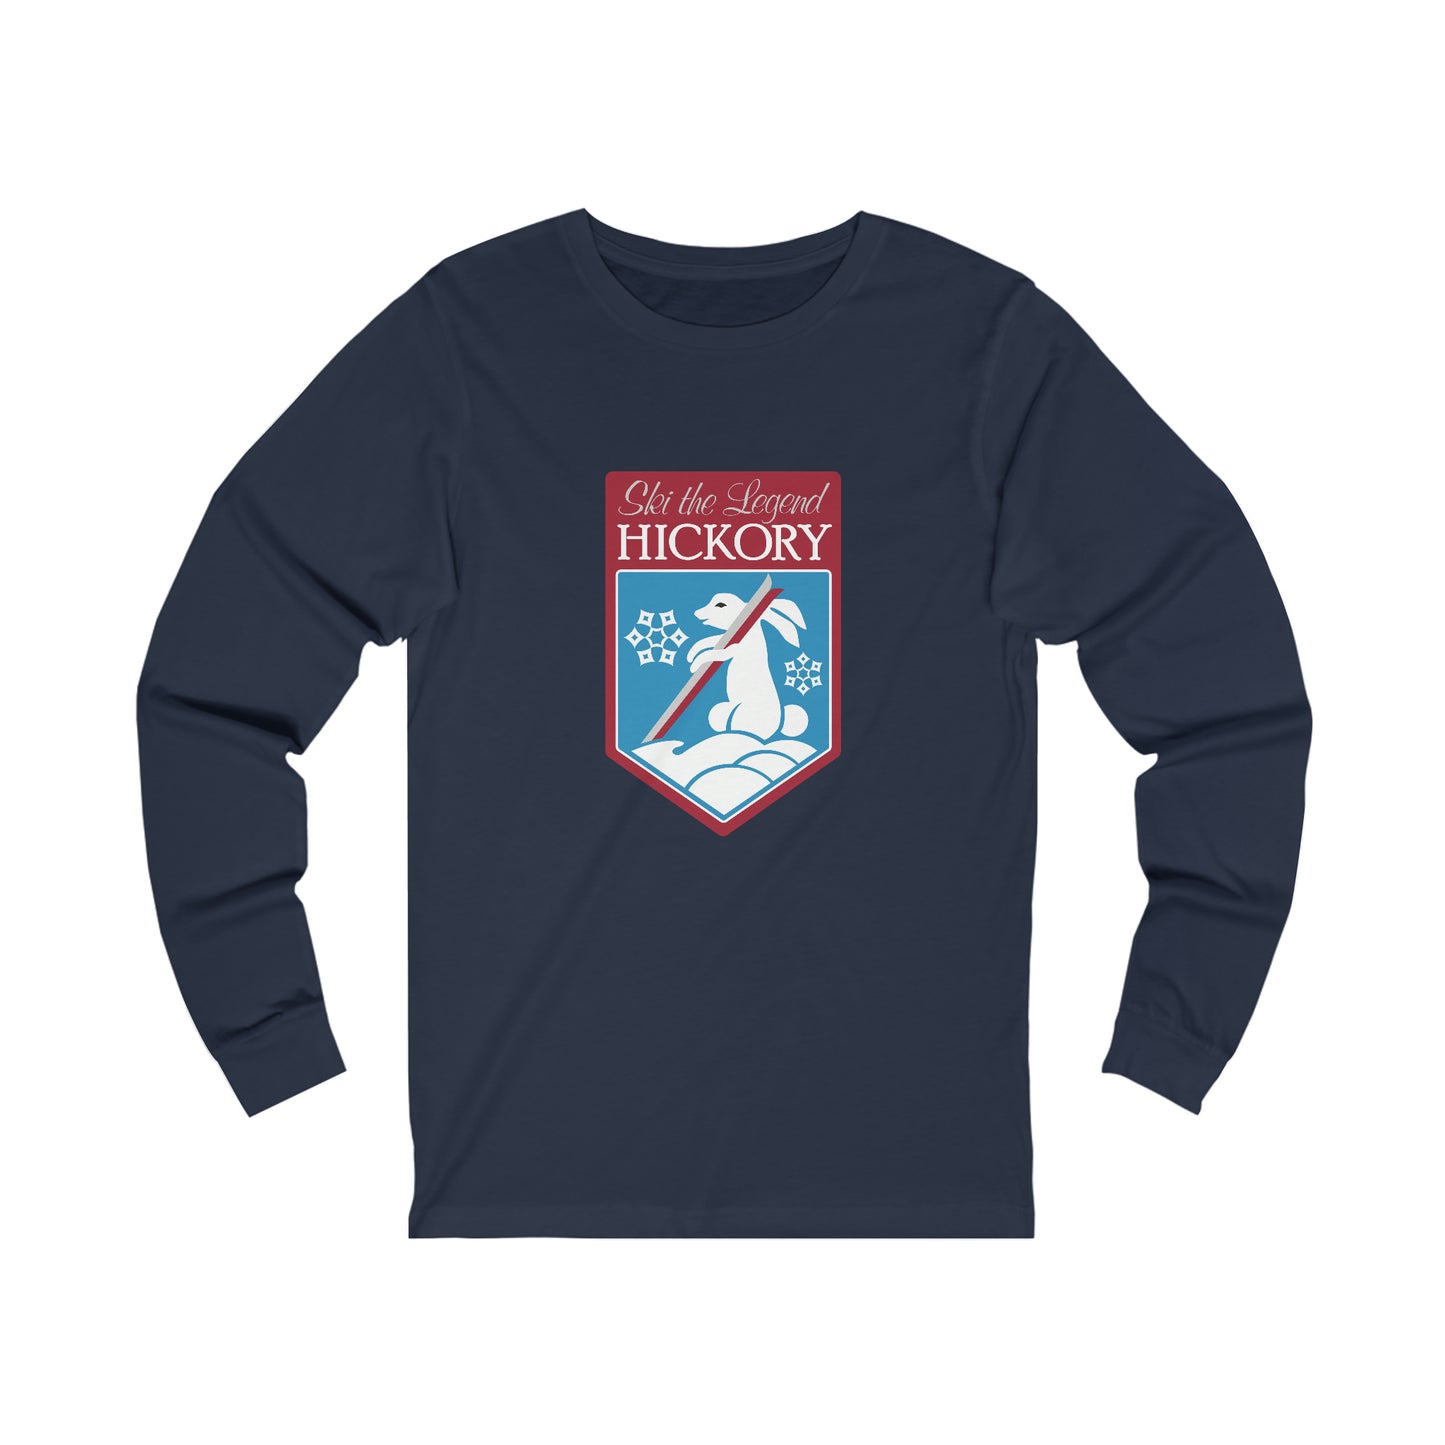 Navy Blue shirt with Hickory Ski the Legend Logo